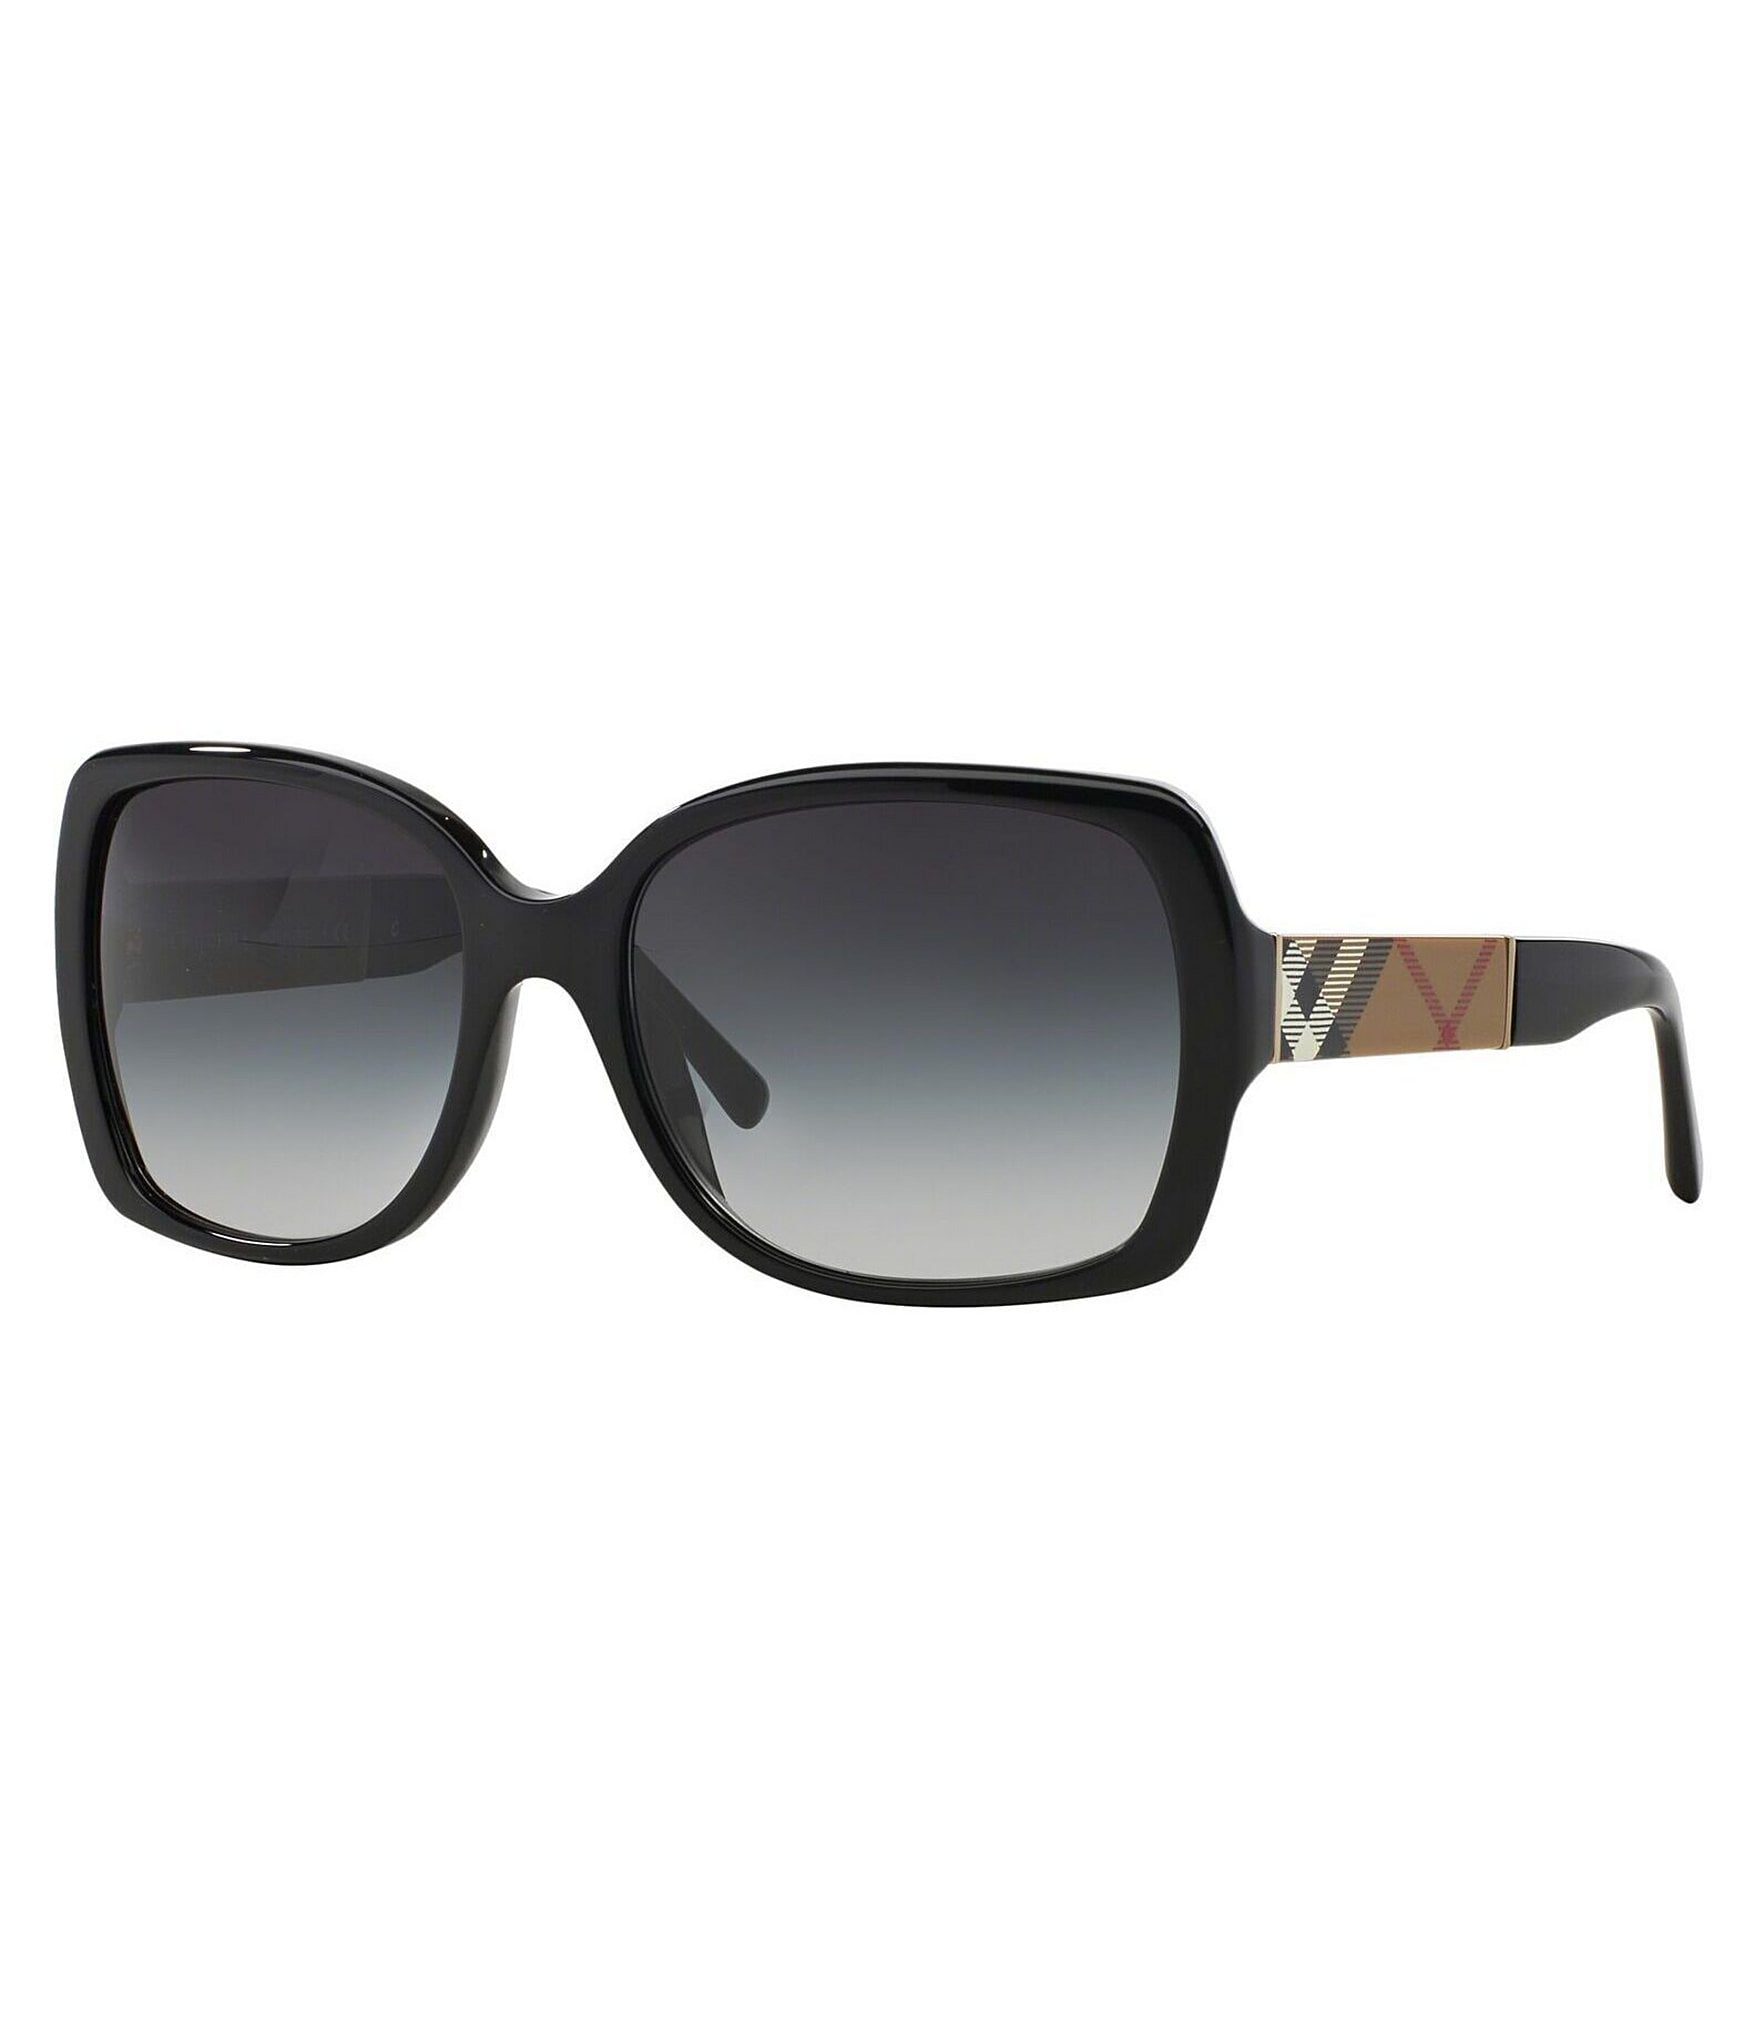 Солнцезащитные очки burberry. Очки Burberry 4160. Солнечные очки Версаче. Prada очки pr19ws. Burberry b4299.